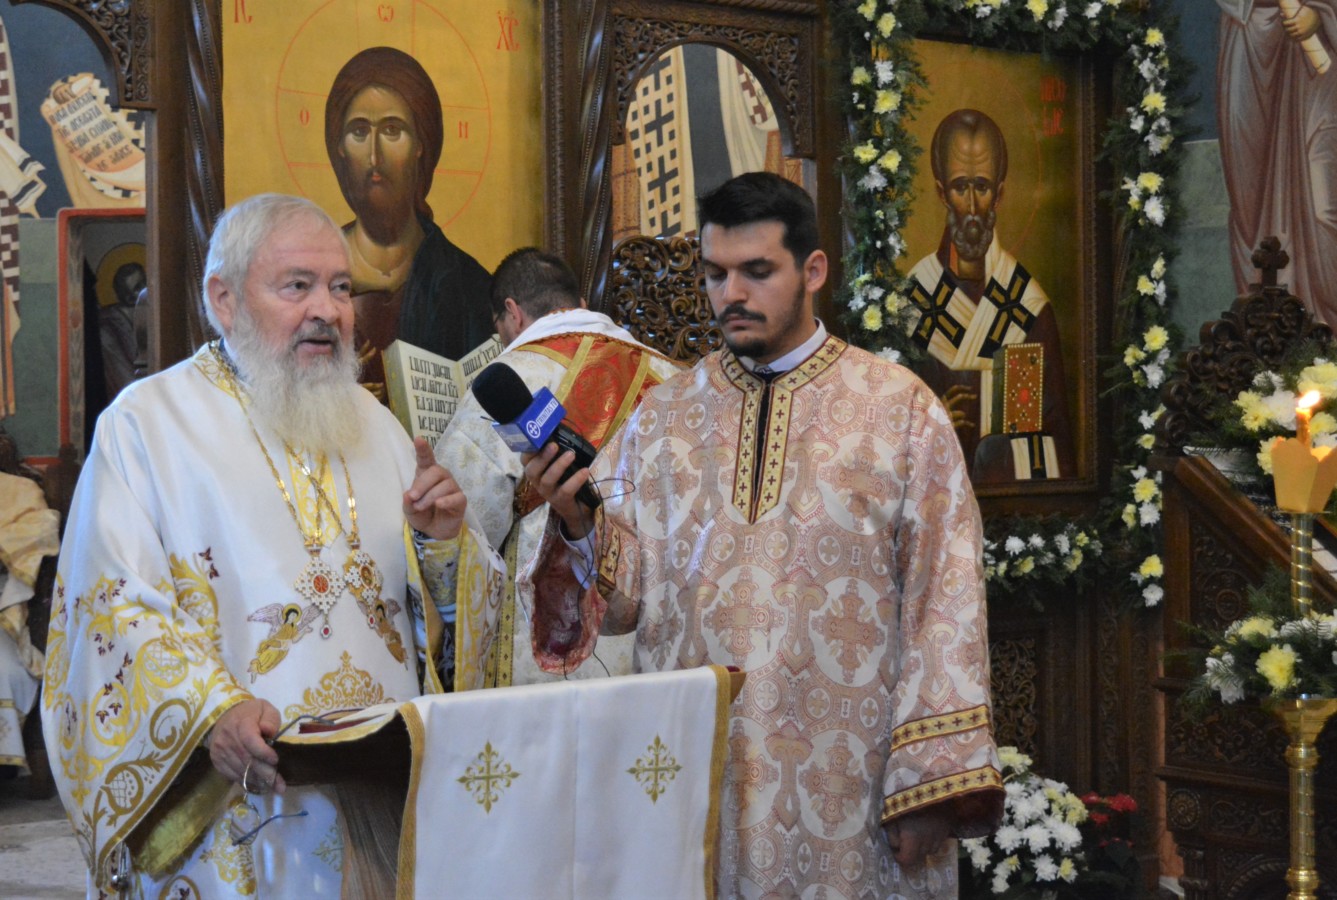 Ocrotitorul spiritual al Facultății de Teologie Ortodoxă din Cluj, sărbătorit în prezența Înaltpreasfințitului Andrei